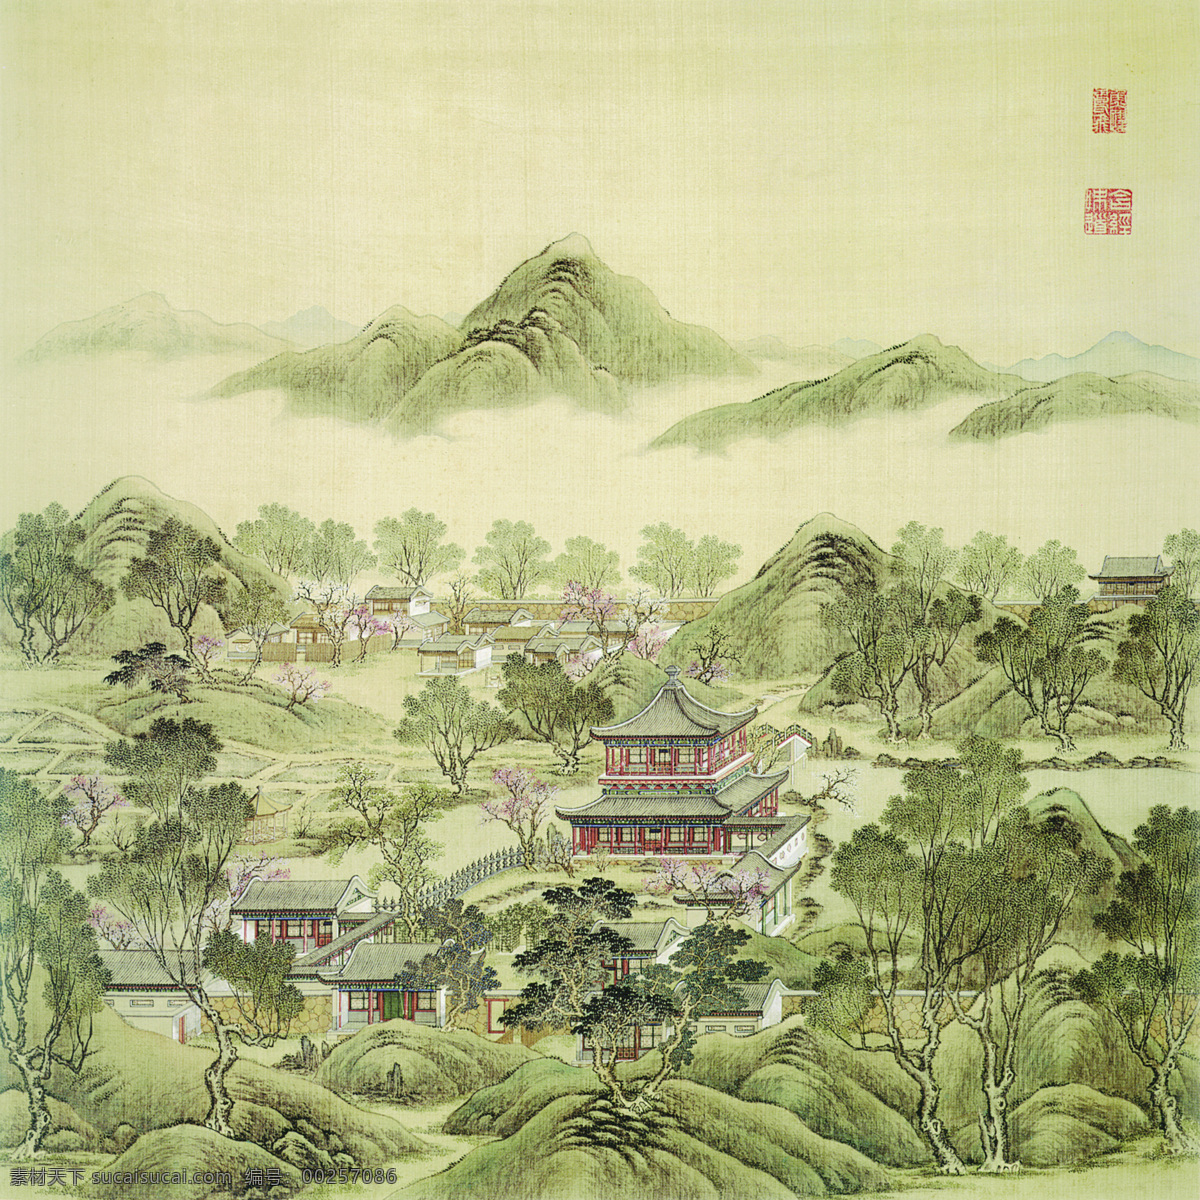 中国画 中国 传统 绘画 山峰 高山 建筑 亭台 文化艺术 绘画书法